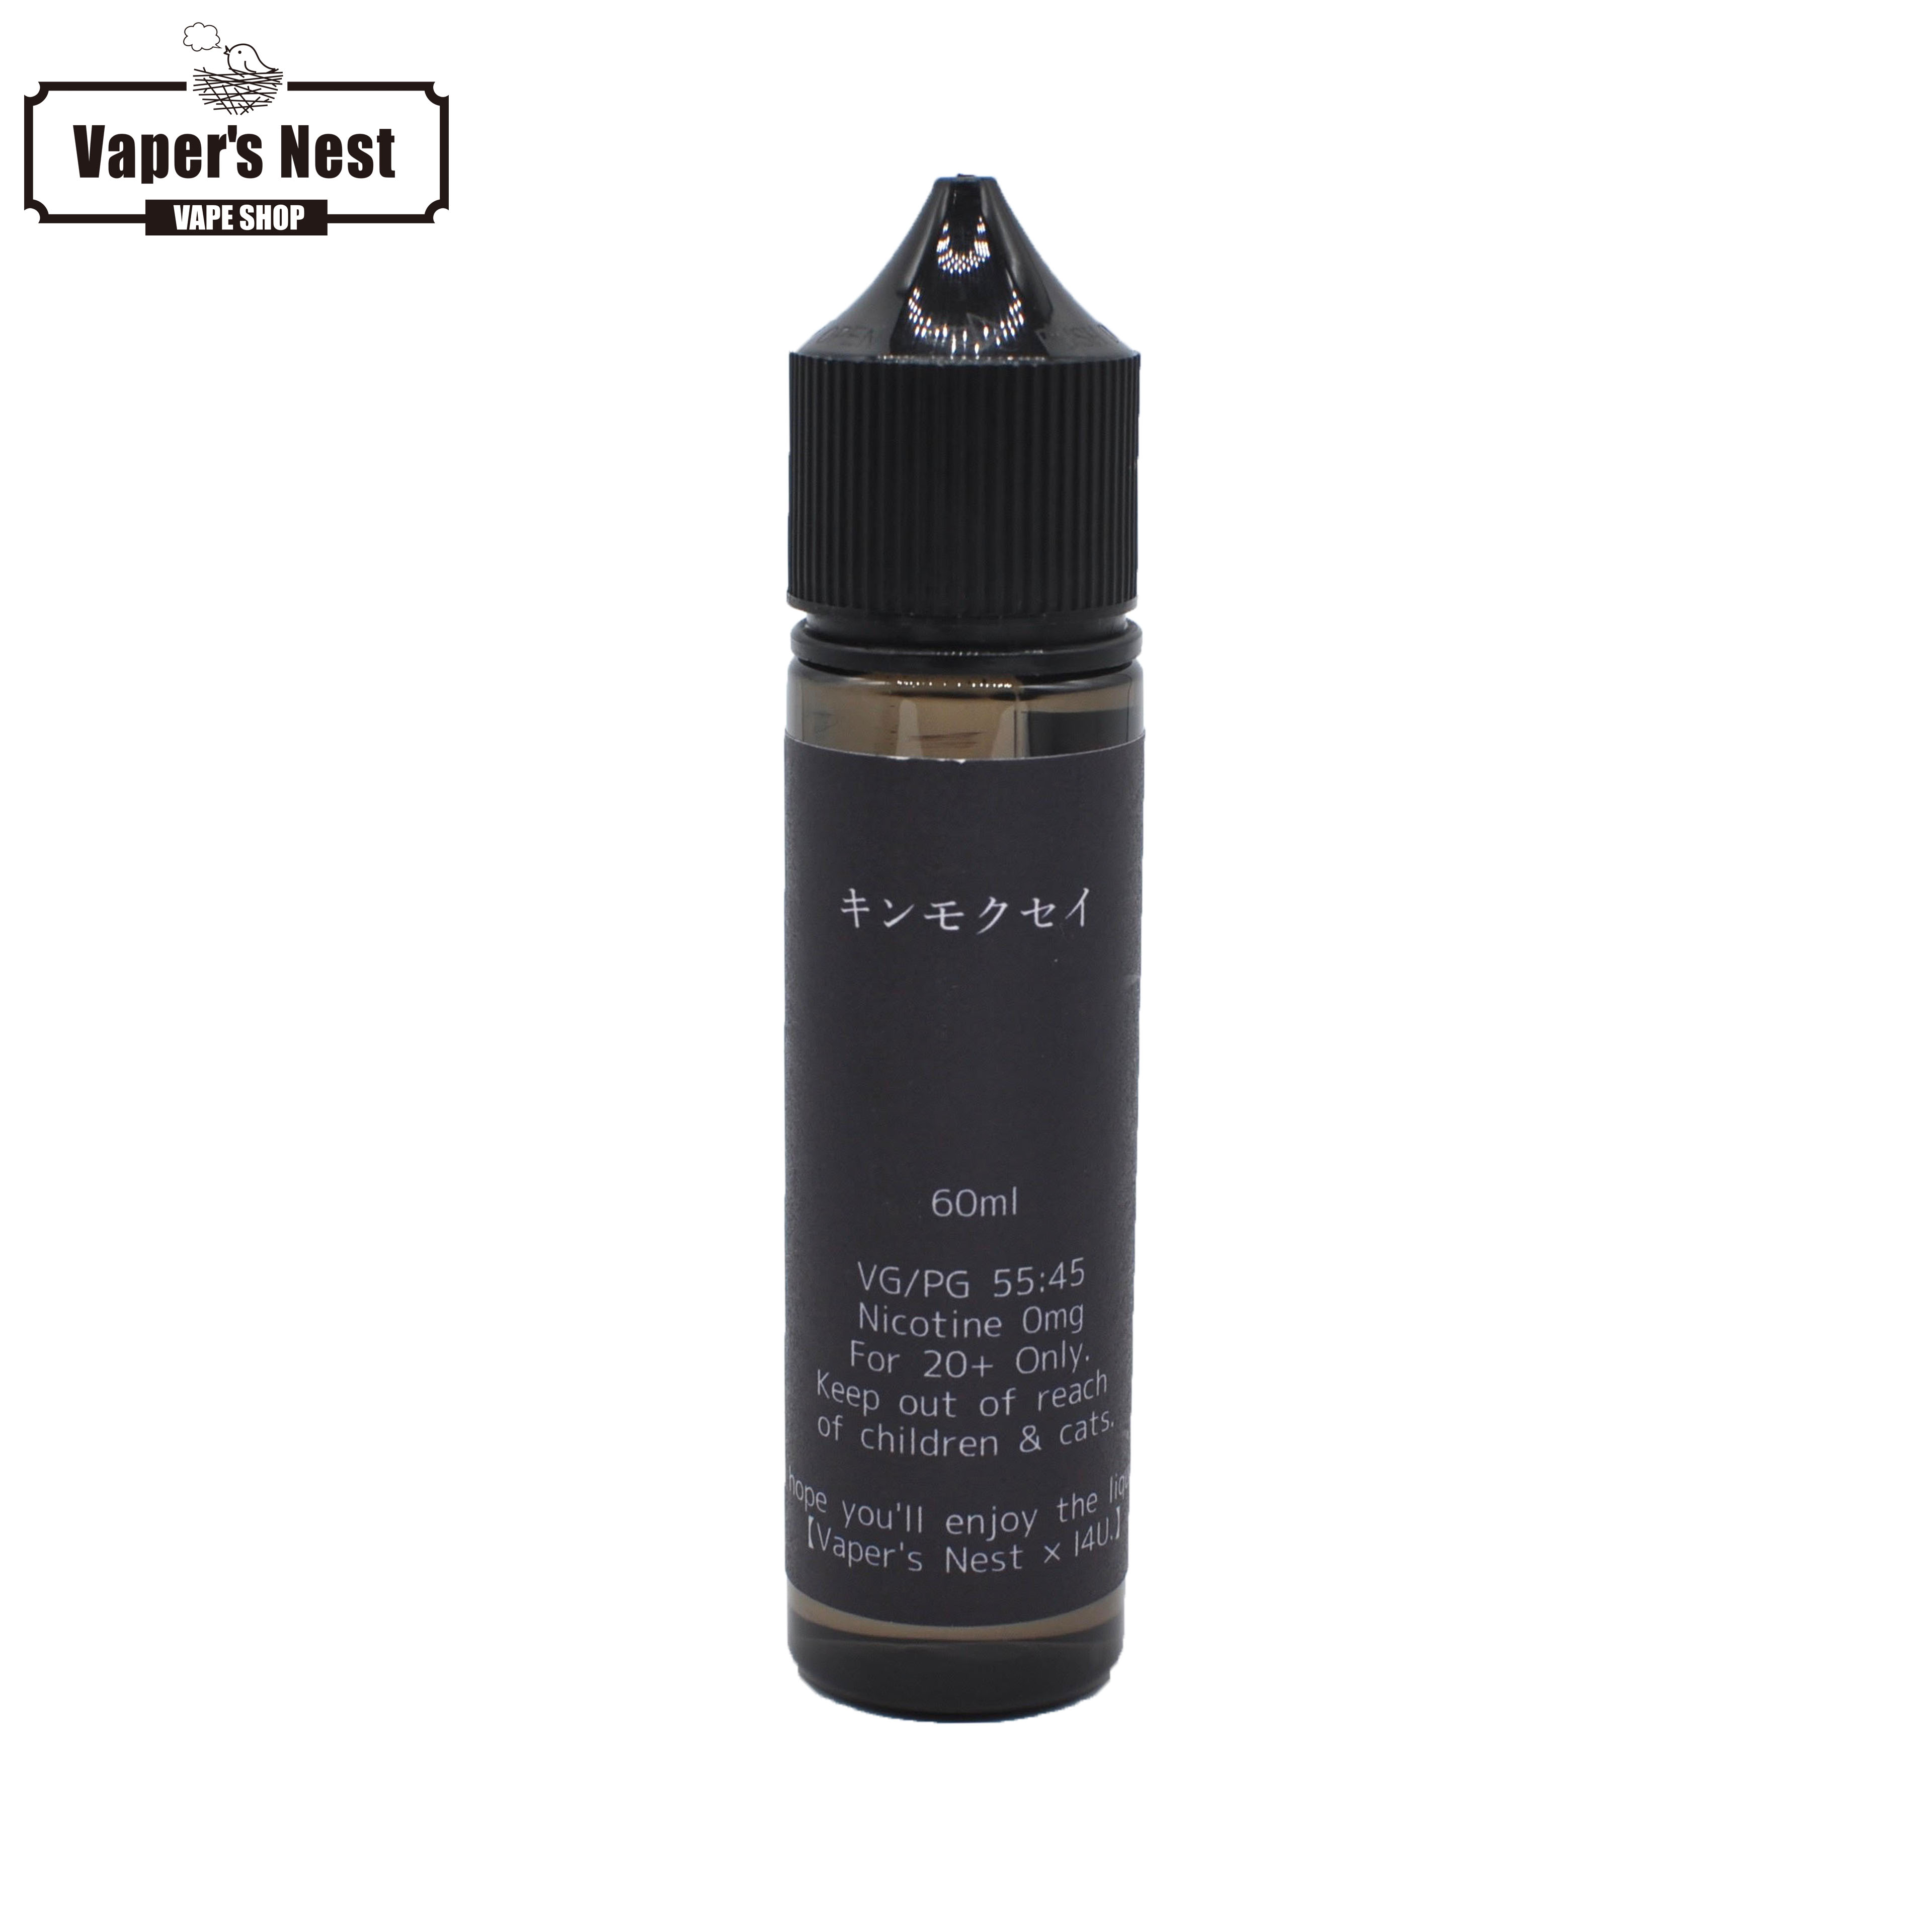 キンモクセイ I4U. 60ml 電子タバコ リキッド タール ニコチン0 ベイプ VAPE Liquid